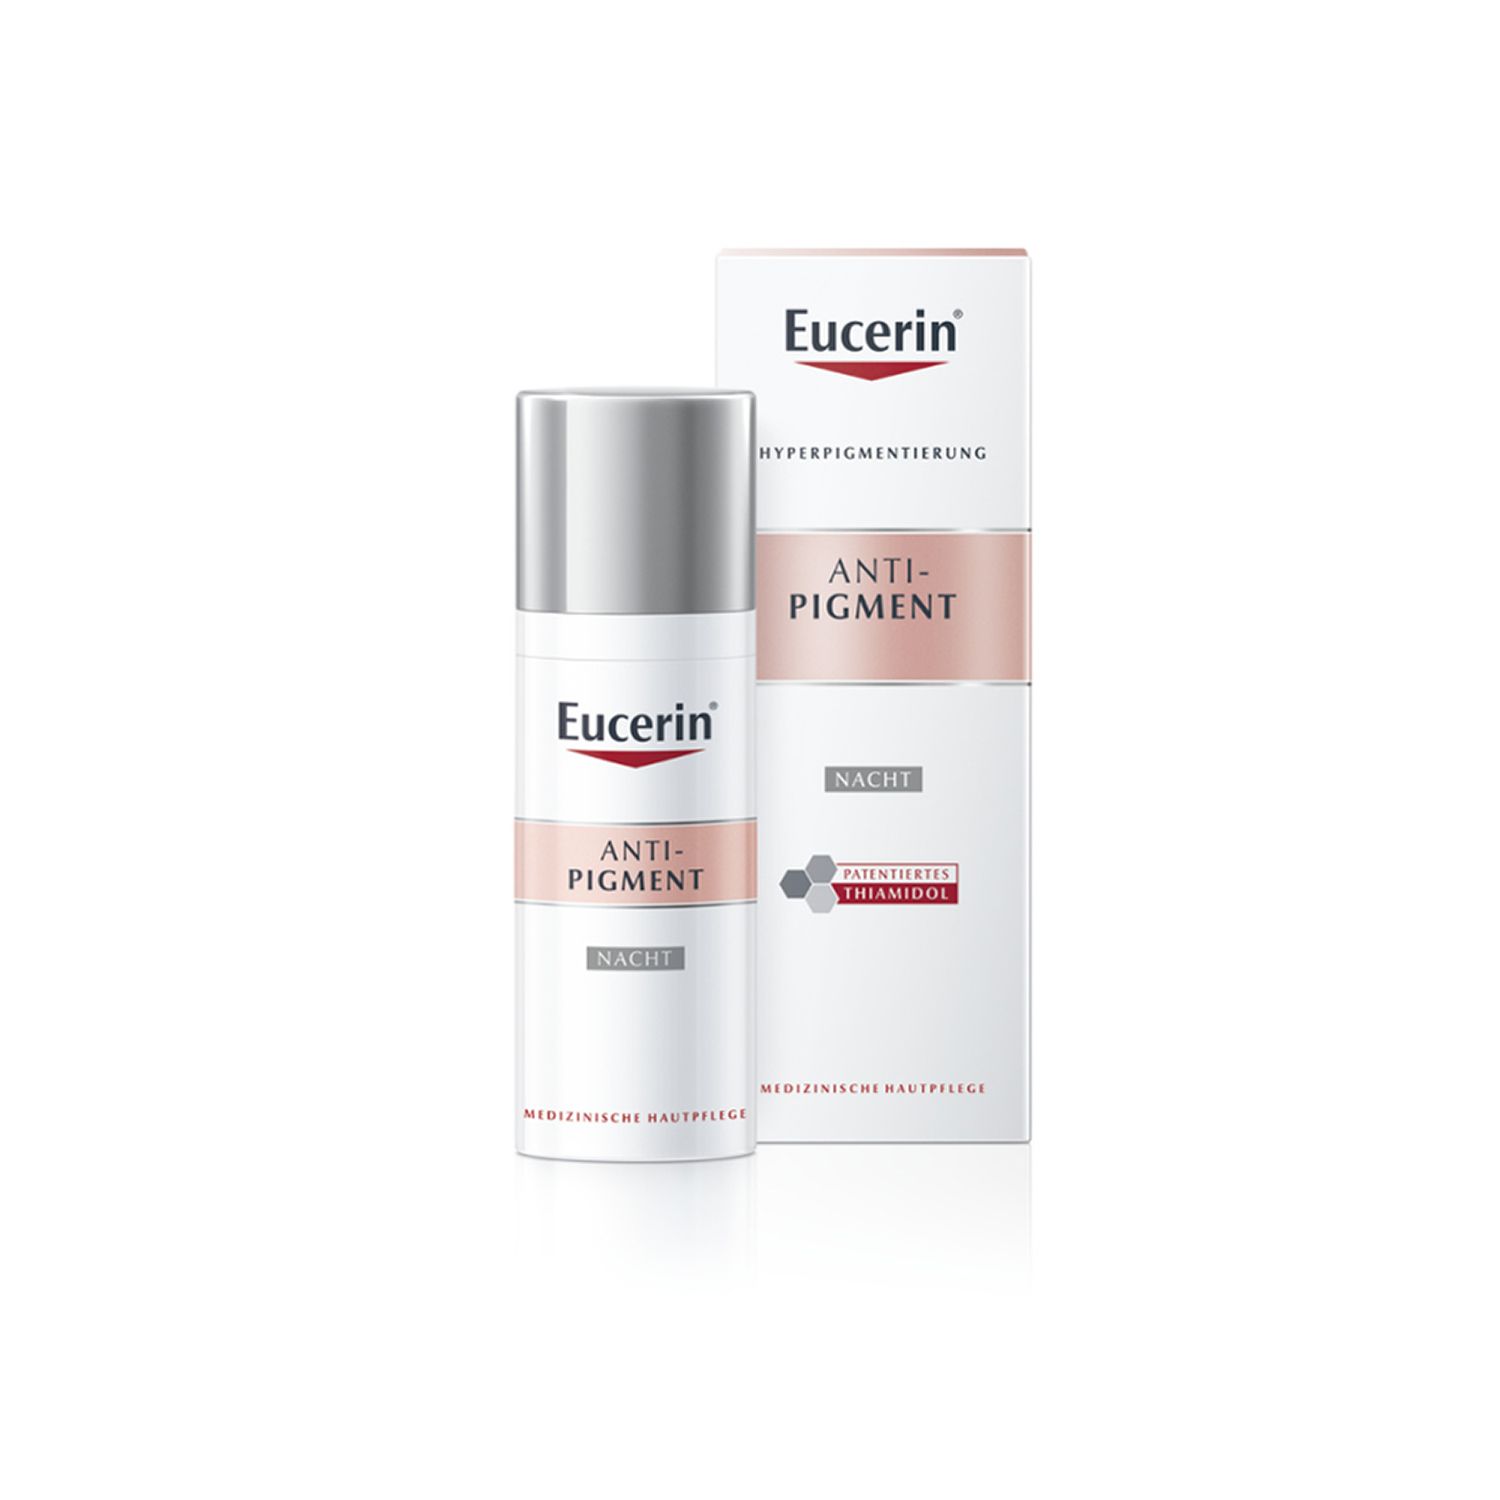 Eucerin® Anti-Pigment Nachtpflege + Eucerin Gesichts-Massage-Roller GRATIS